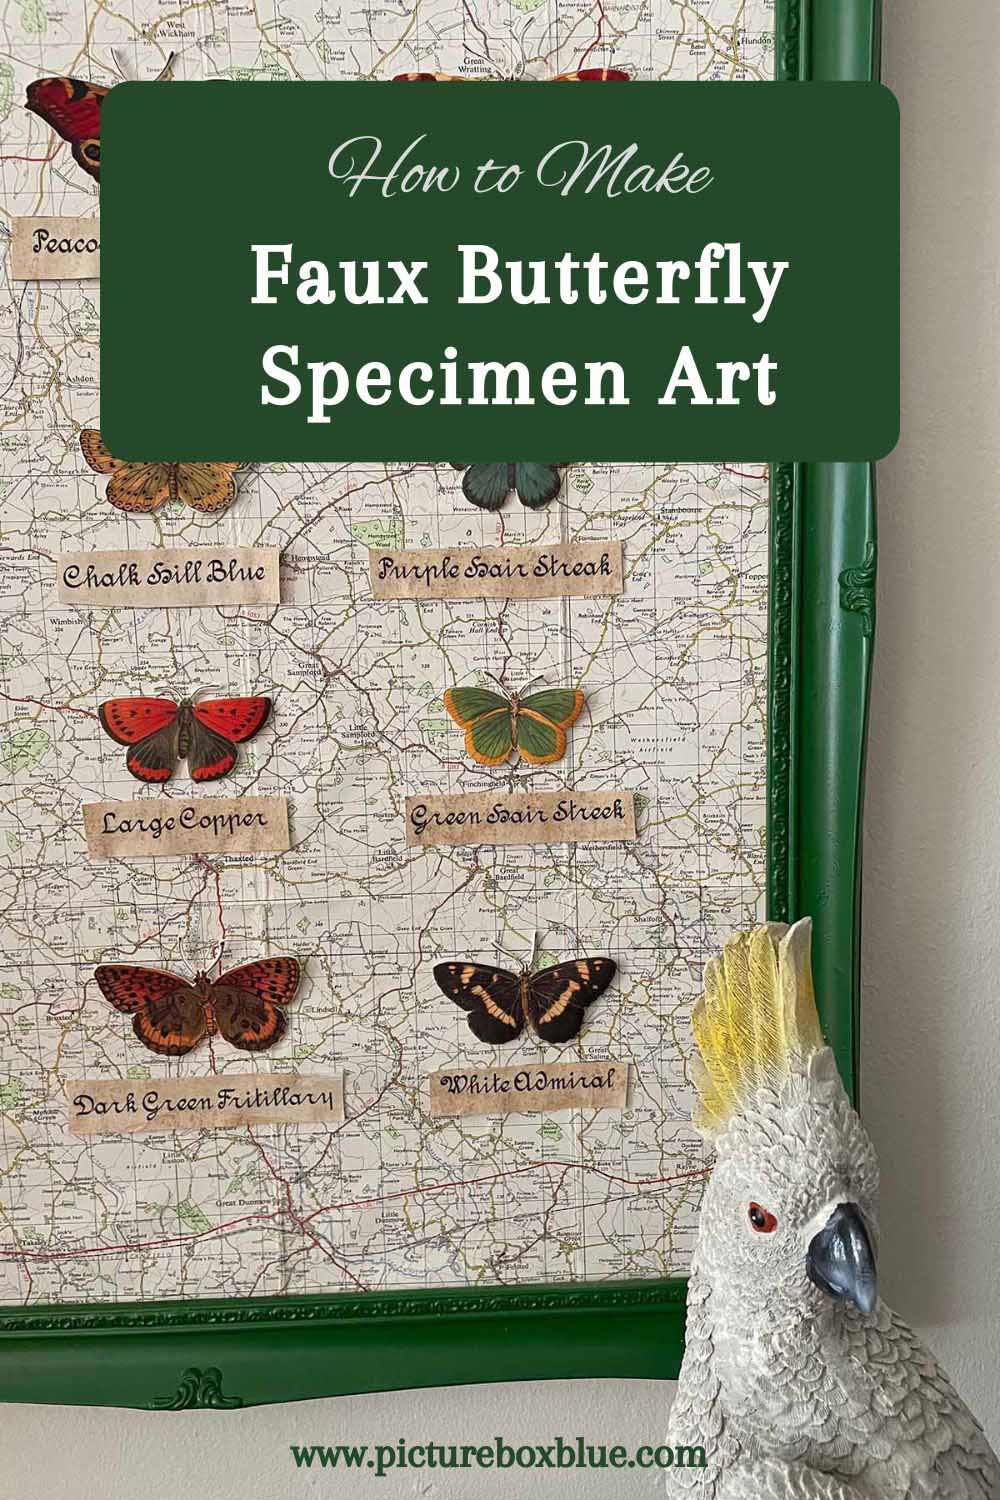 Faux butterfly specimen art